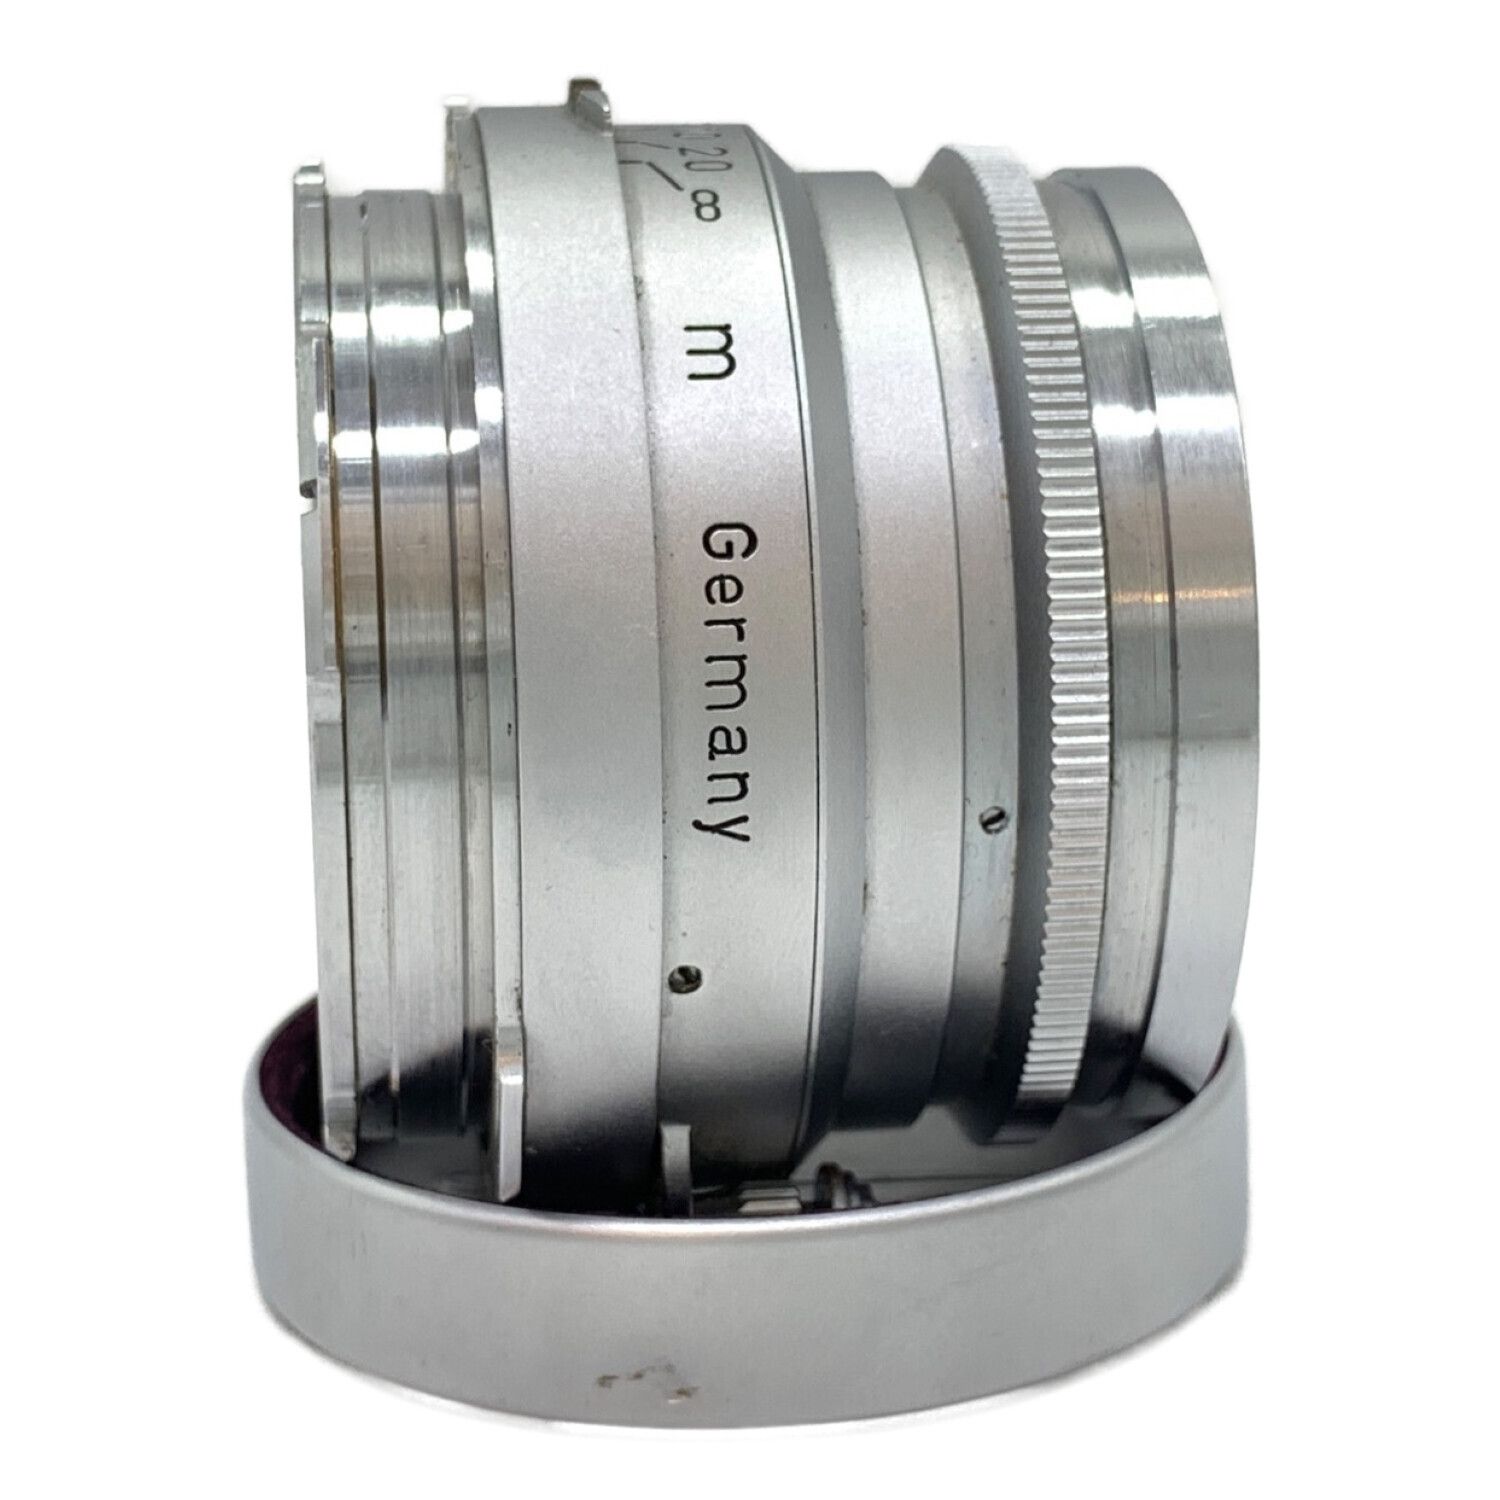 Leica (ライカ) 単焦点レンズ Summaron 35mm F3.5 Mマウント ...